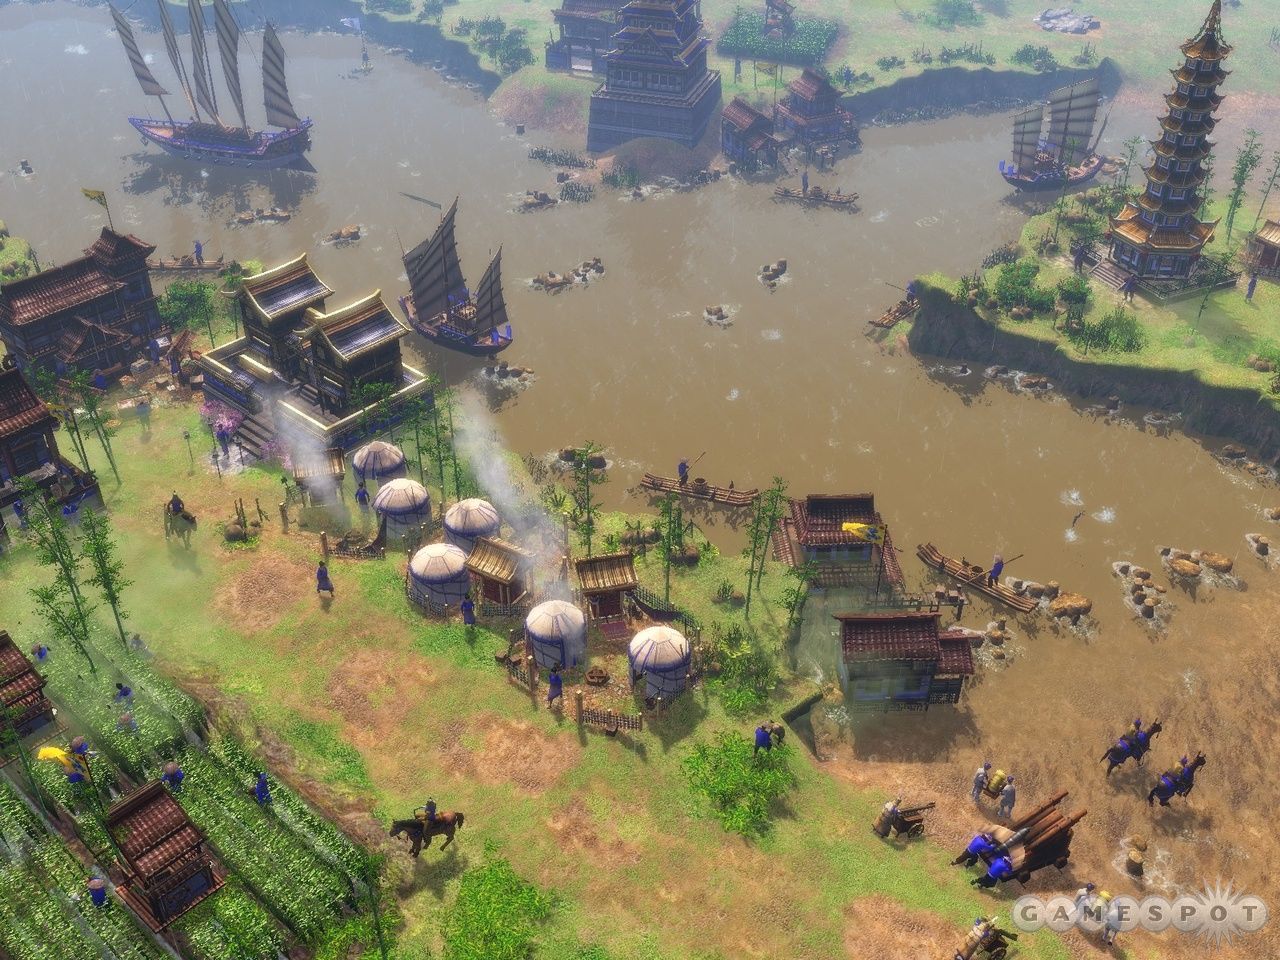 《帝国时代3:亚洲王朝》游戏画面(2)_酷图秀_